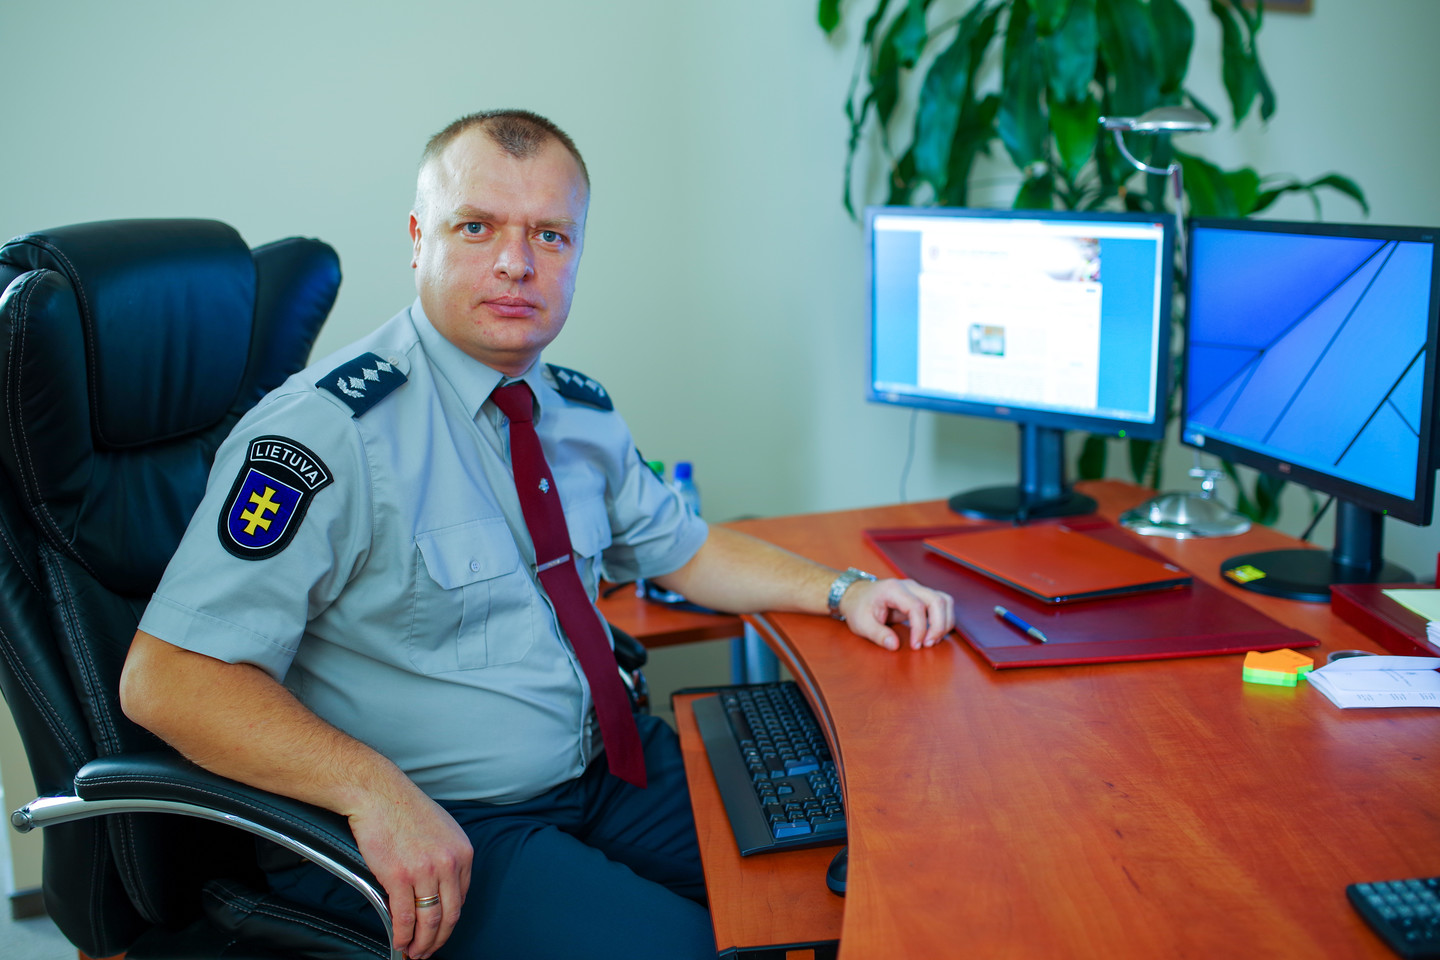  Vilniaus apskrities VPK viršininkas gina nurodymą į gatves išleisti patruliuoti po vieną policininką.<br> V.Ščiavinsko nuotr.